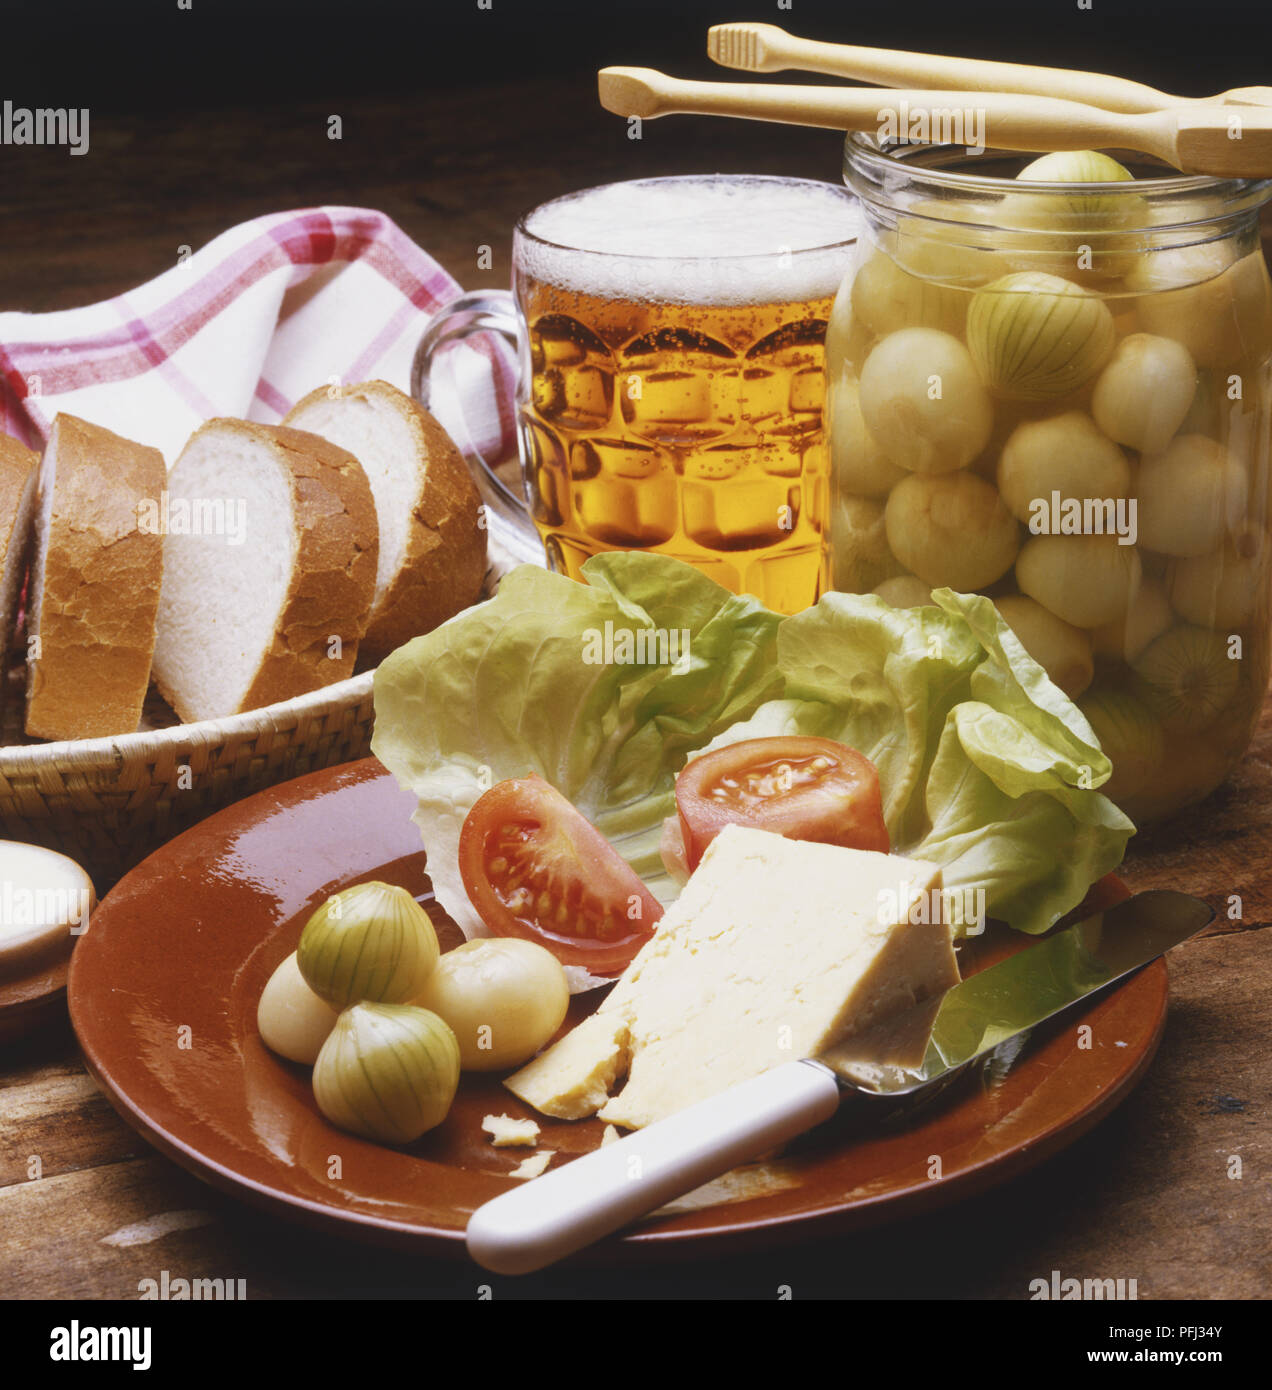 Fromage, salade et oignons marinés sur une plaque, panier contenant des tranches de pain blanc, verre de bière et pot d'oignons confits Banque D'Images